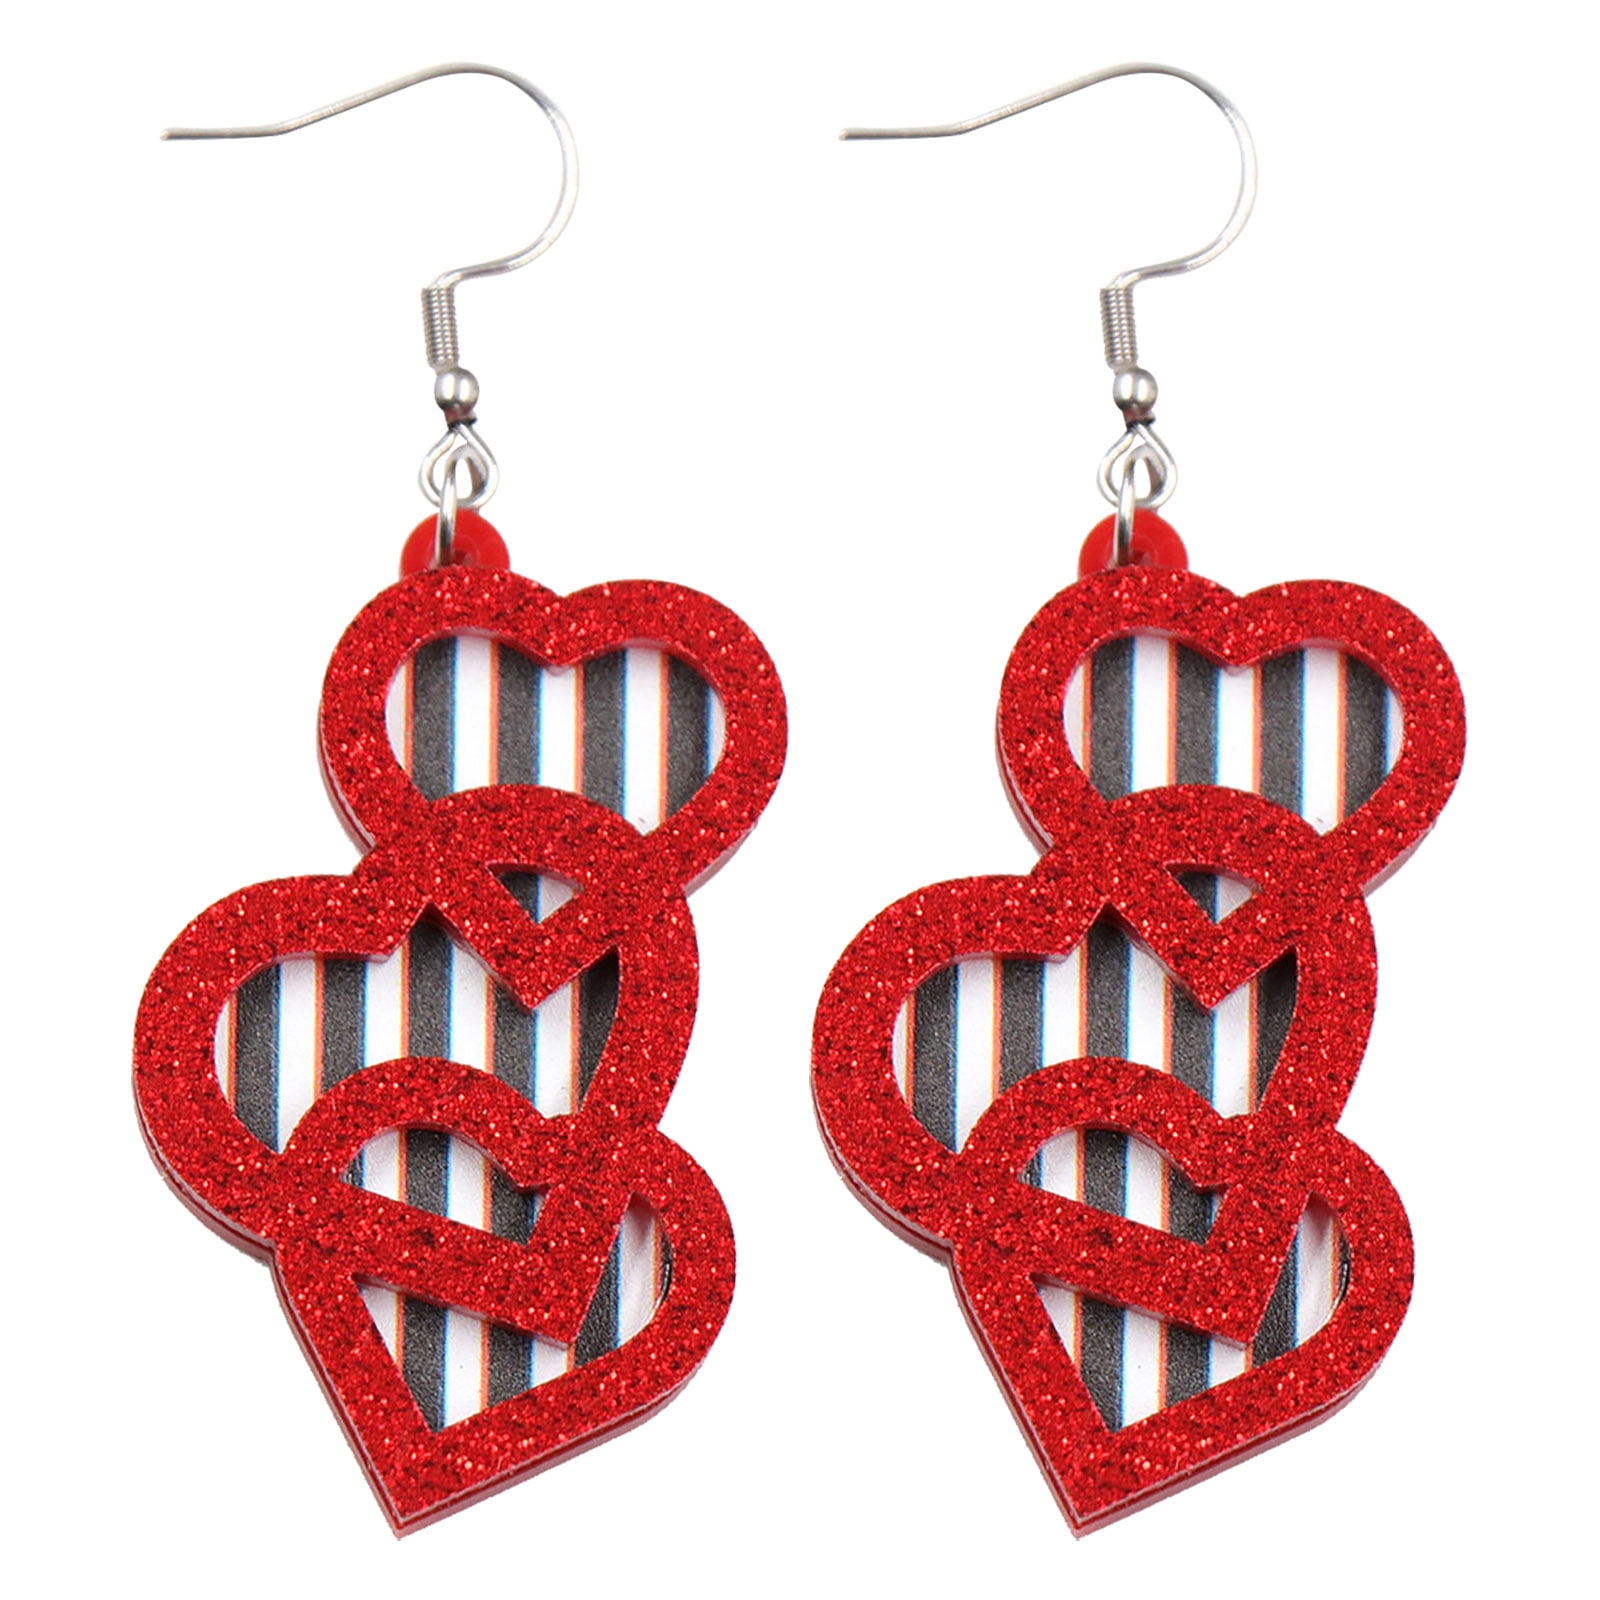 Frehsky earrings for women Handmade Beaded Lips Valentine's Day